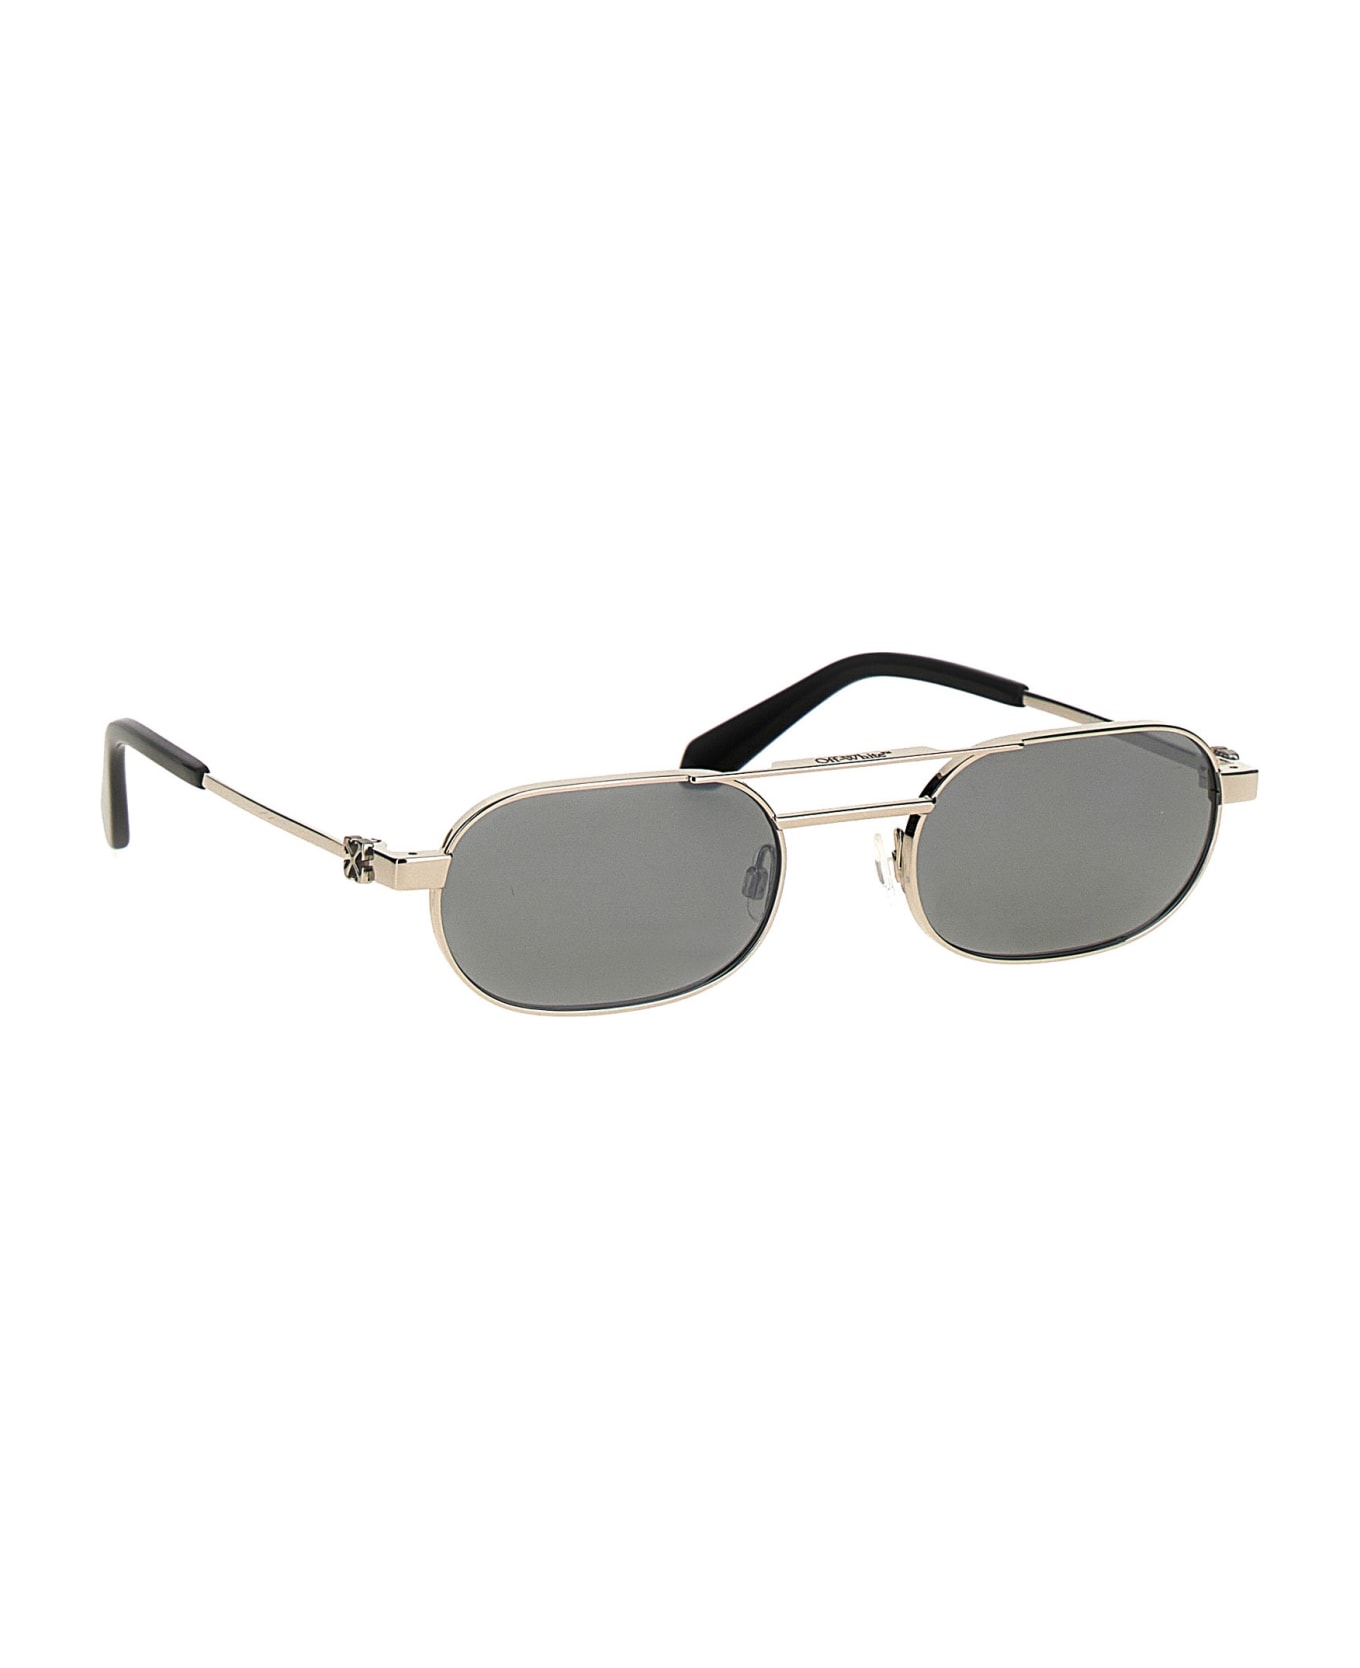 Off-White 'vaiden' Sunglasses - Silver